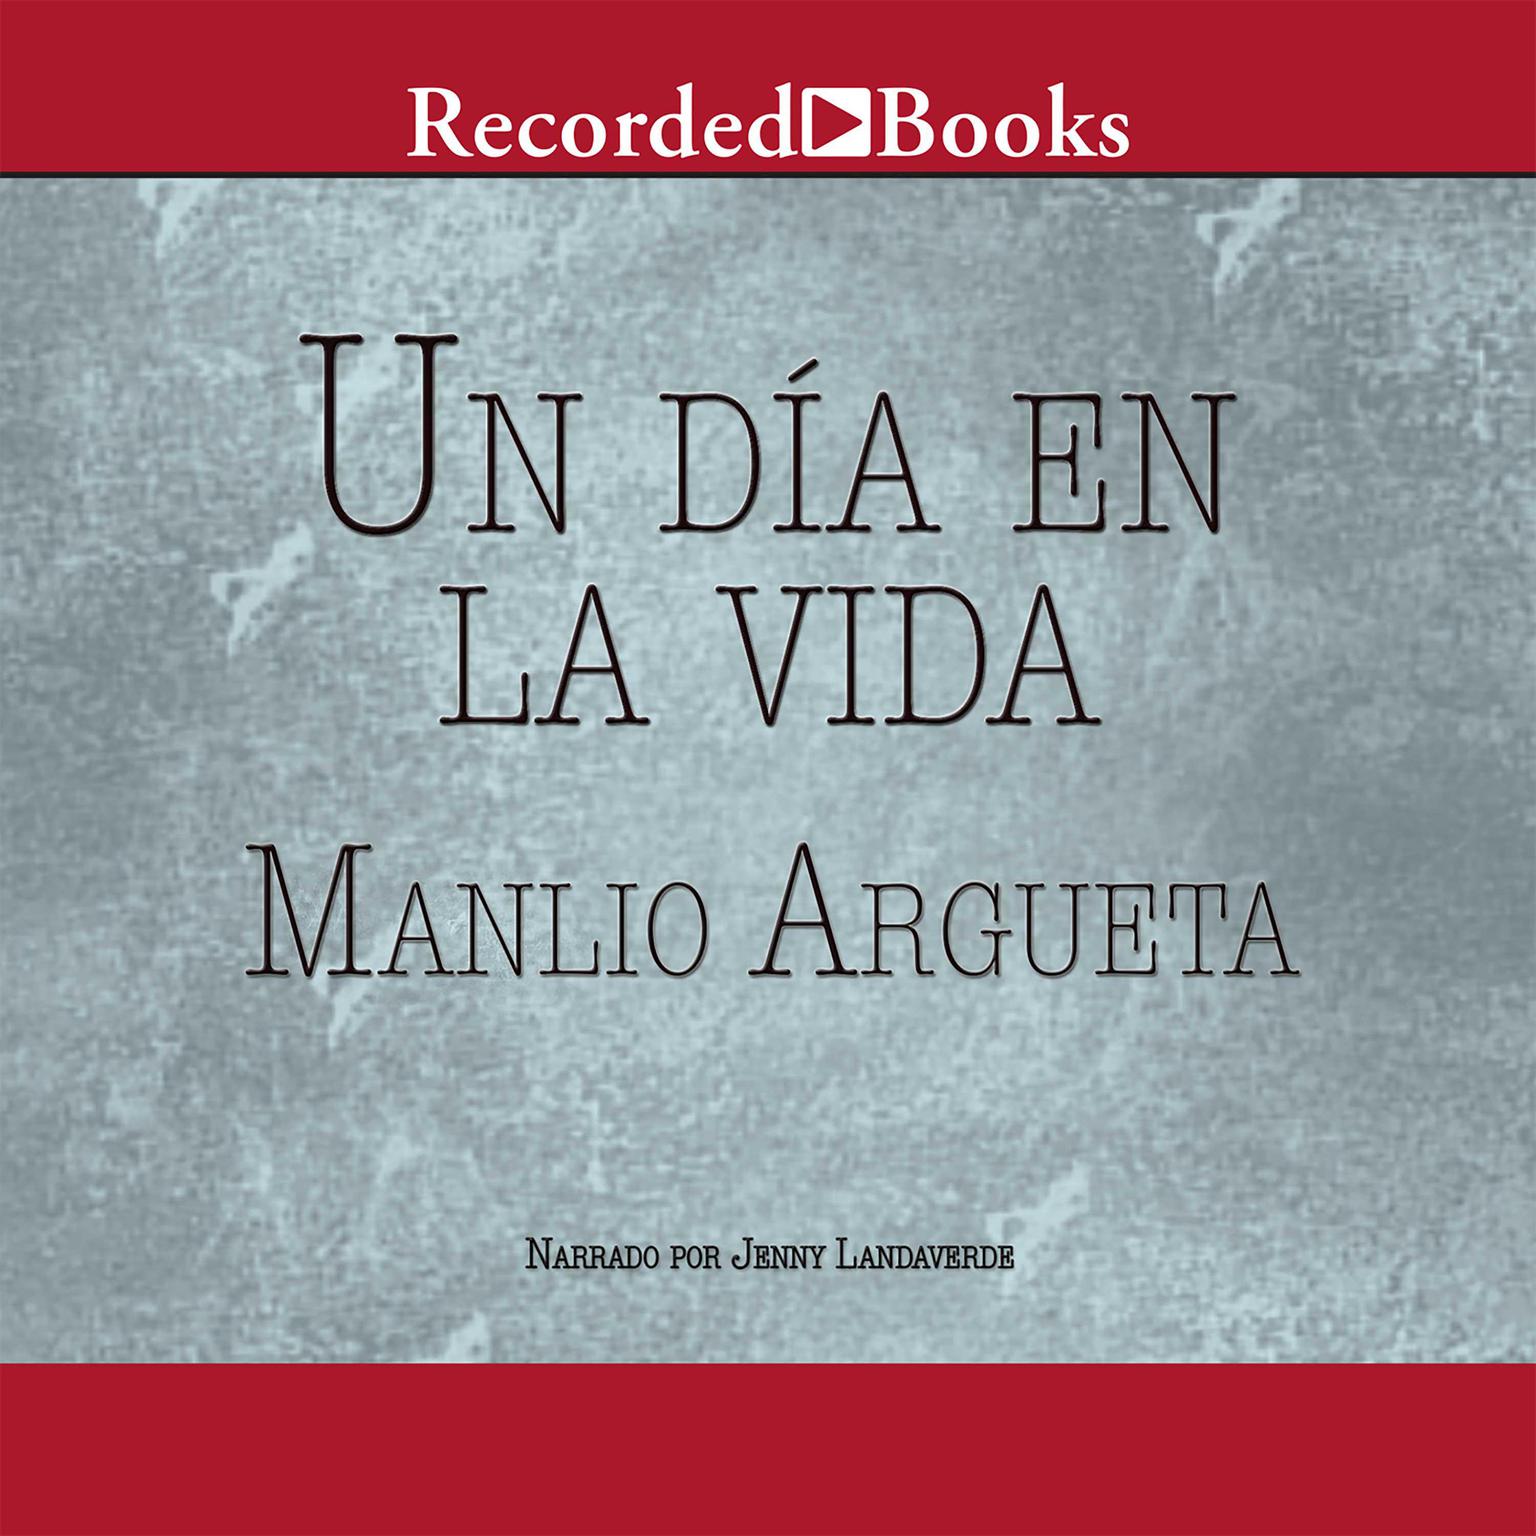 Un dia en la vida (One Day in the Life) Audiobook, by Manlio Argueta